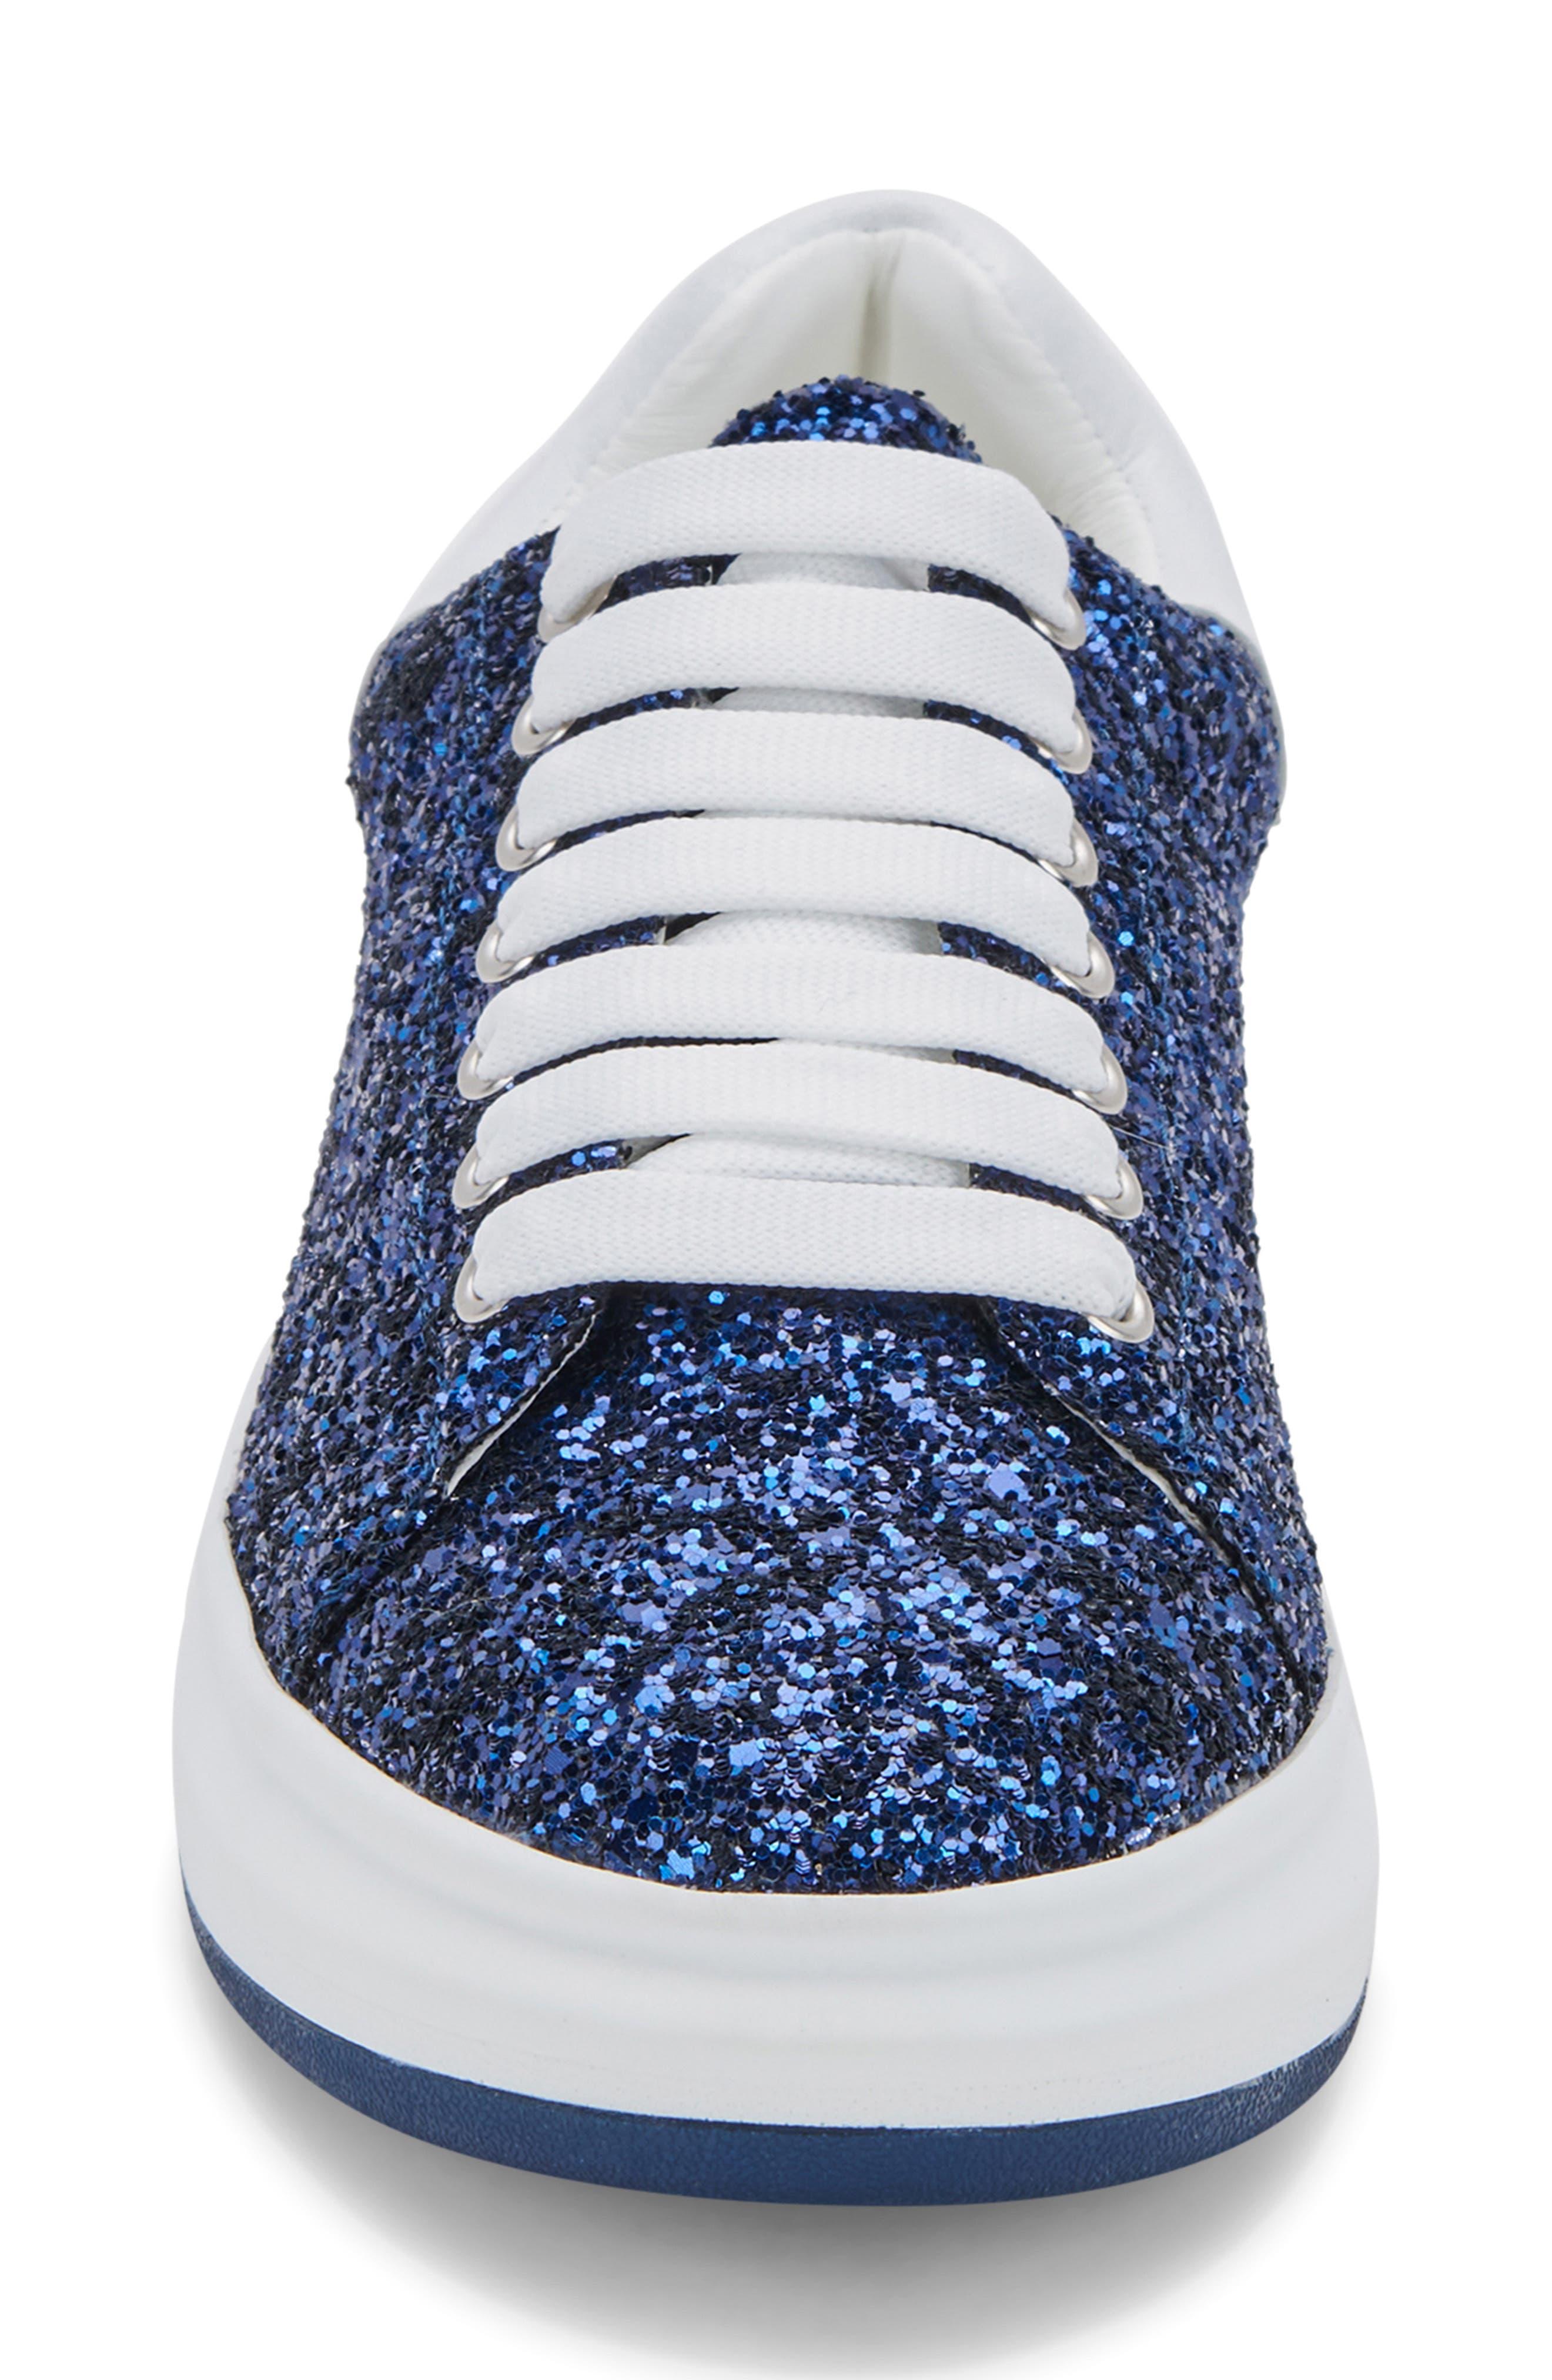 Blondo Diva Waterproof Sneaker In Blu/sequin At Nordstrom Rack in Blue |  Lyst